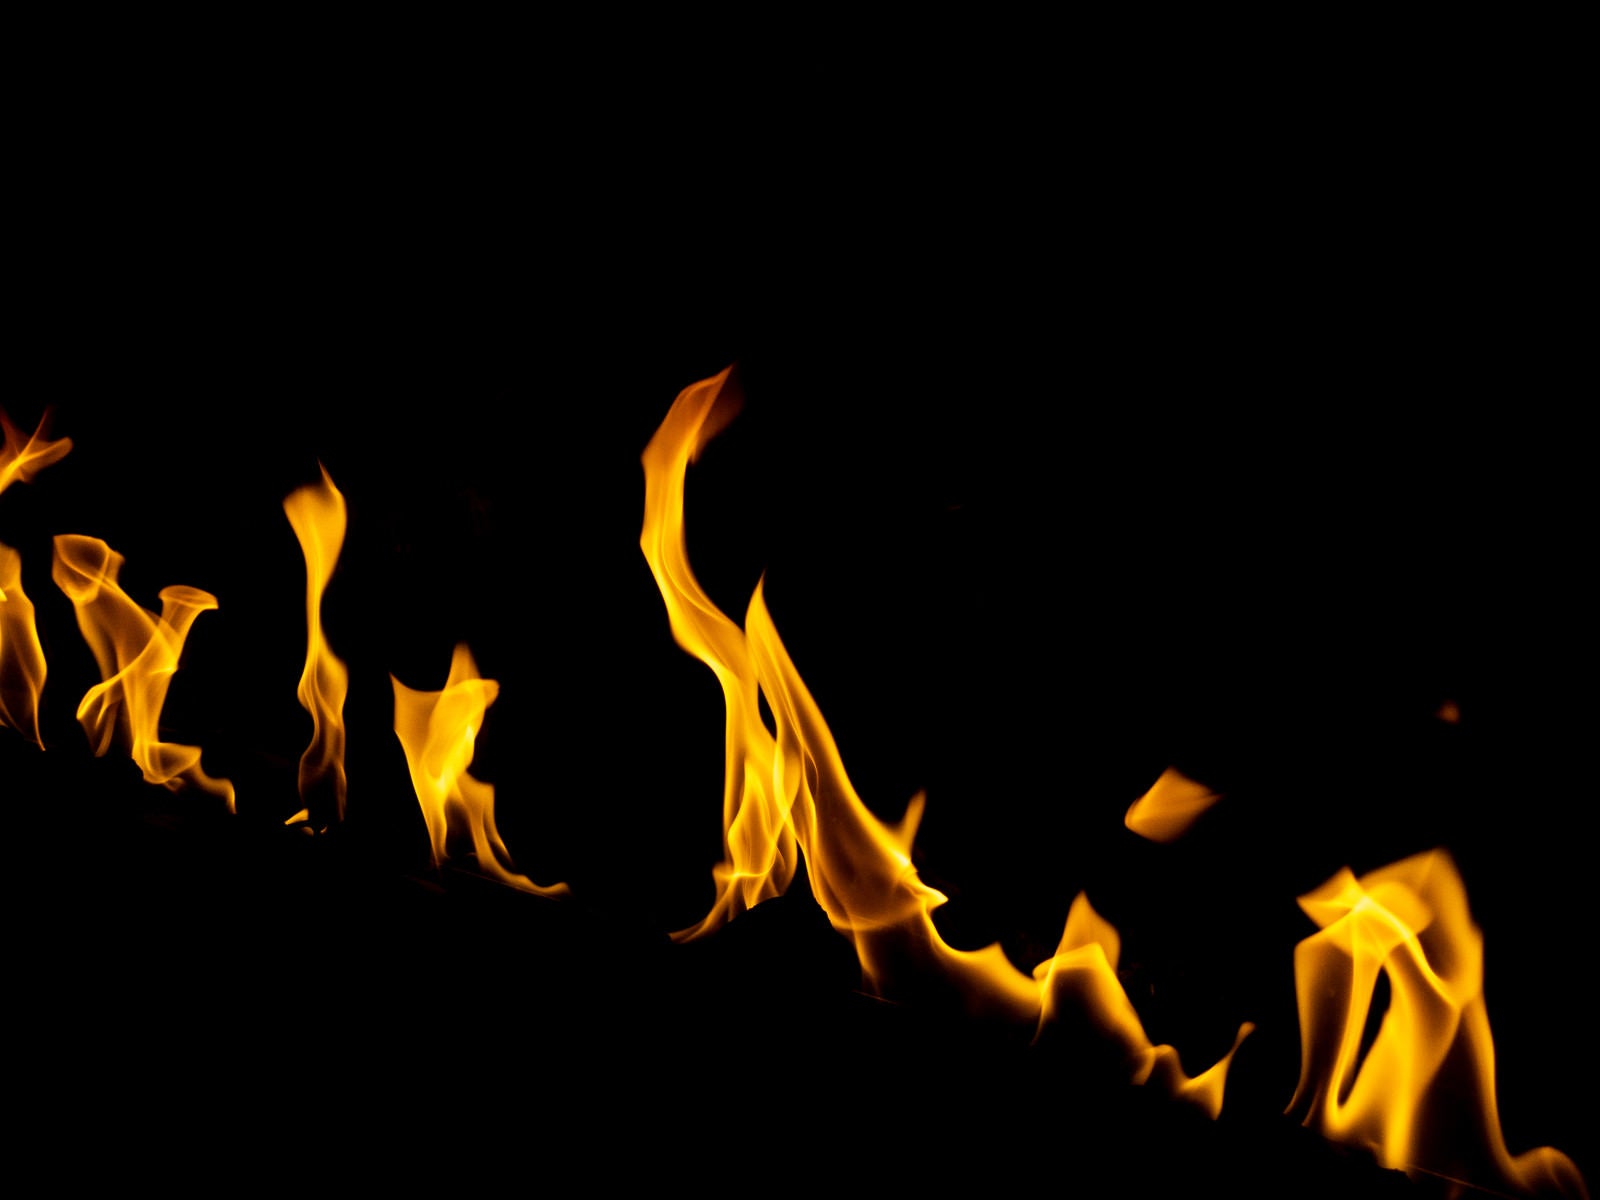 「燃える様子」の写真